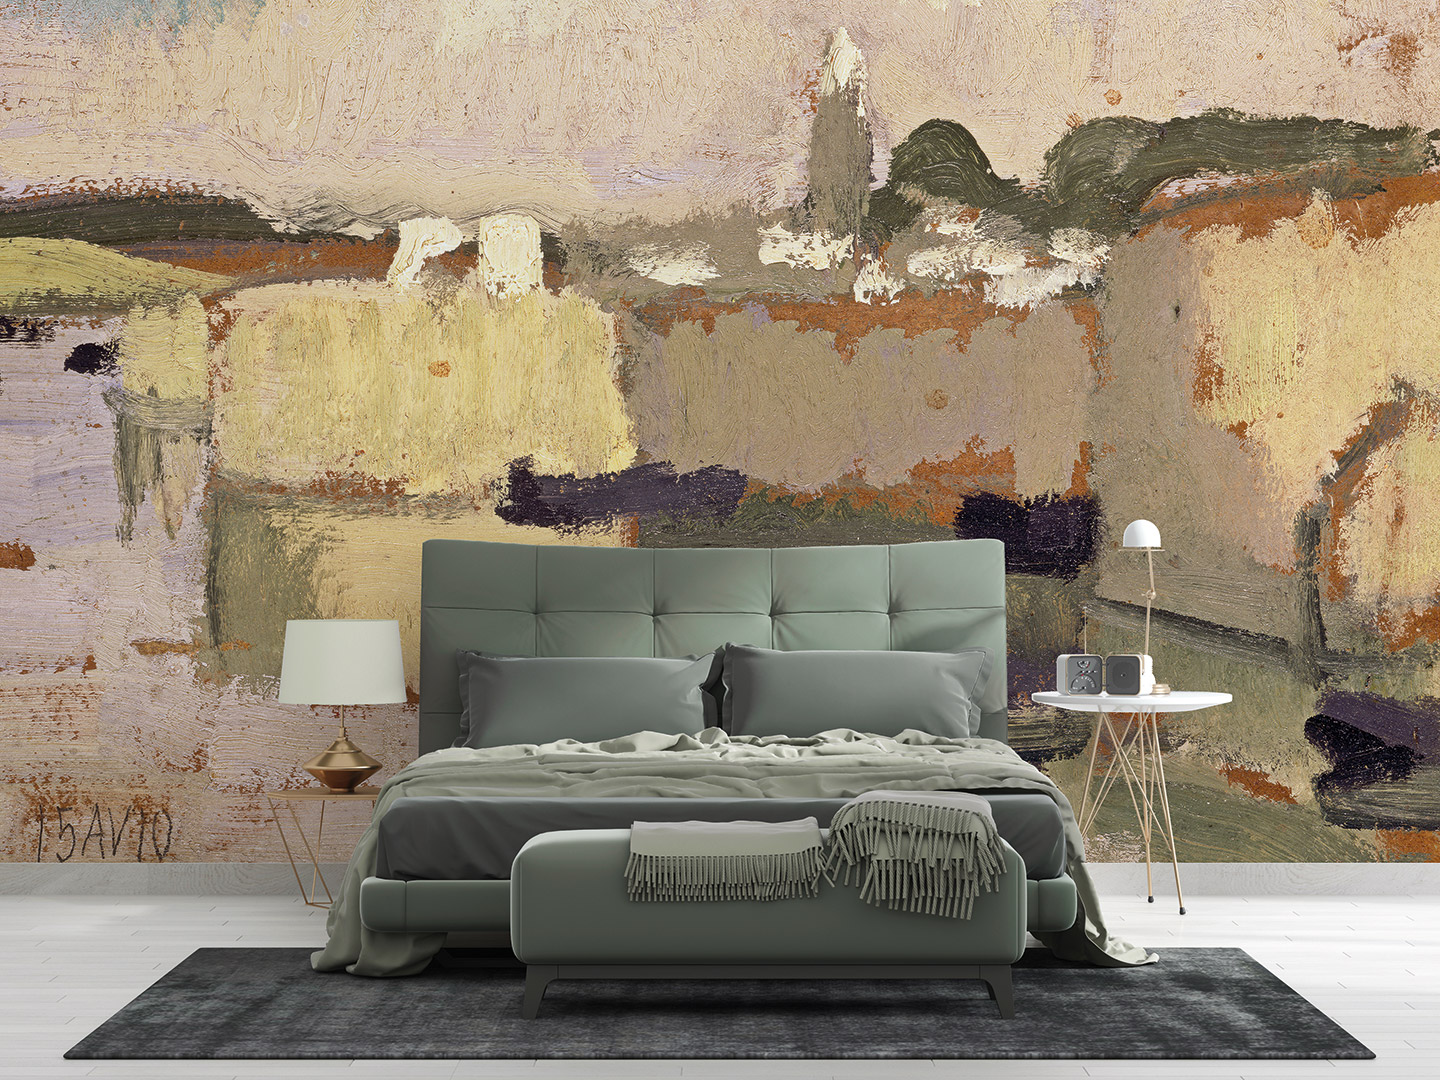 panorama-tapete-anpassbar-0129-orientalische-ruhe-kunst-wandbild-tapezieren-gastro-hotel-raumausstattung-graeflich-muenstersche-manufaktur.jpg